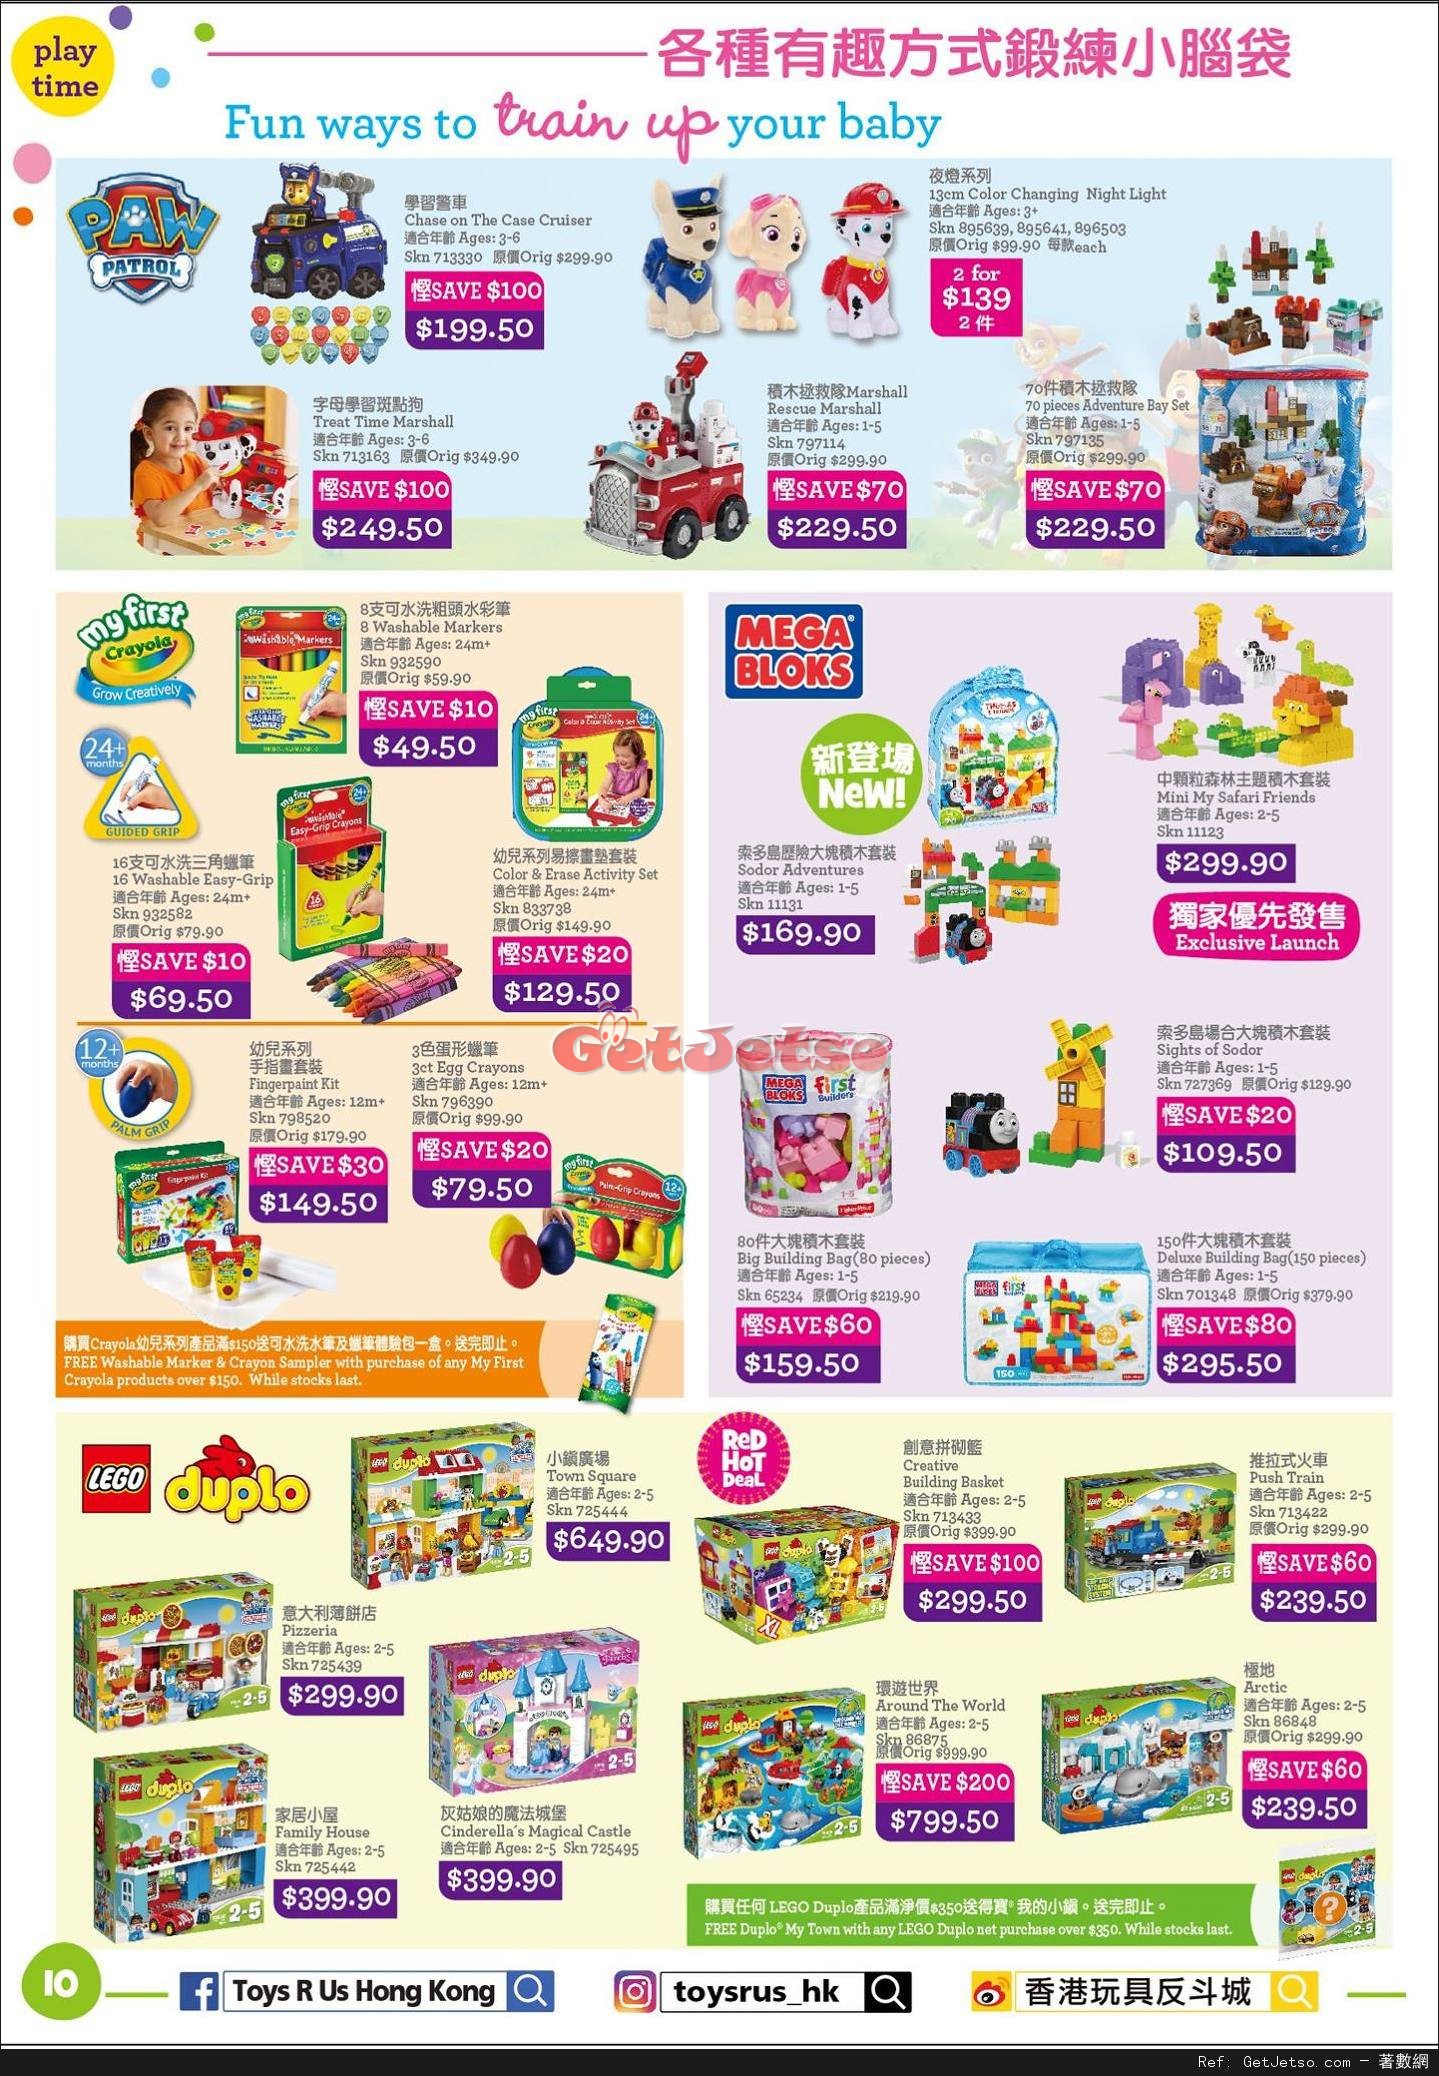 玩具反斗城Toys"R"Us 嬰兒用品低至2折開倉優惠(至17年4月18日)圖片10